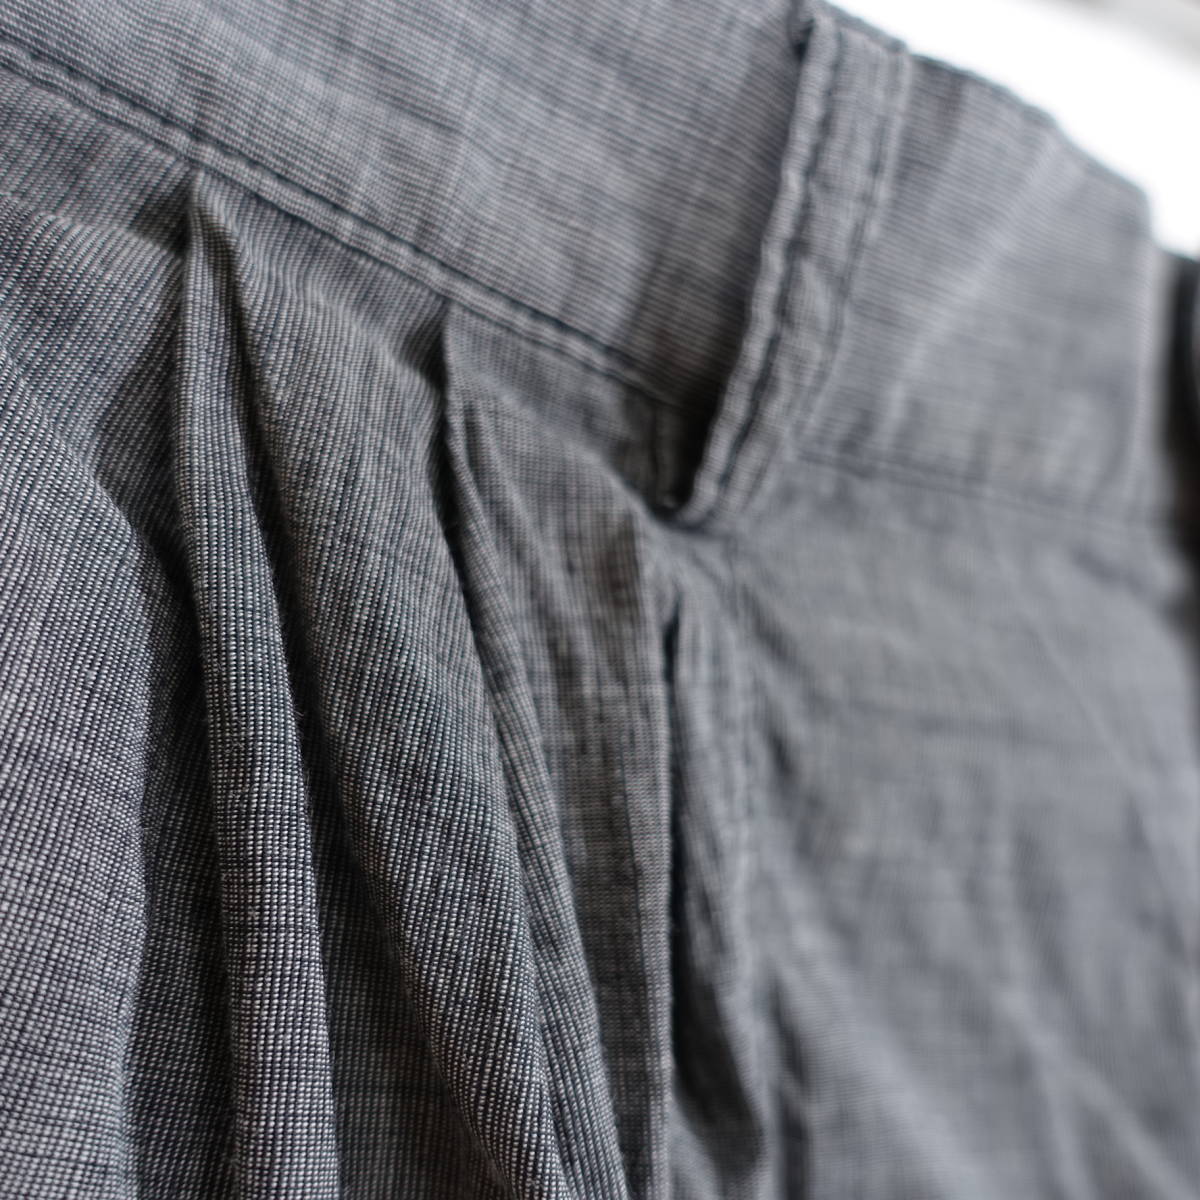 [ хорошая вещь ] Dries Van Noten весна лето linen хлопок конические брюки DRIES VAN NOTEN размер 48(L соответствует ) серый 